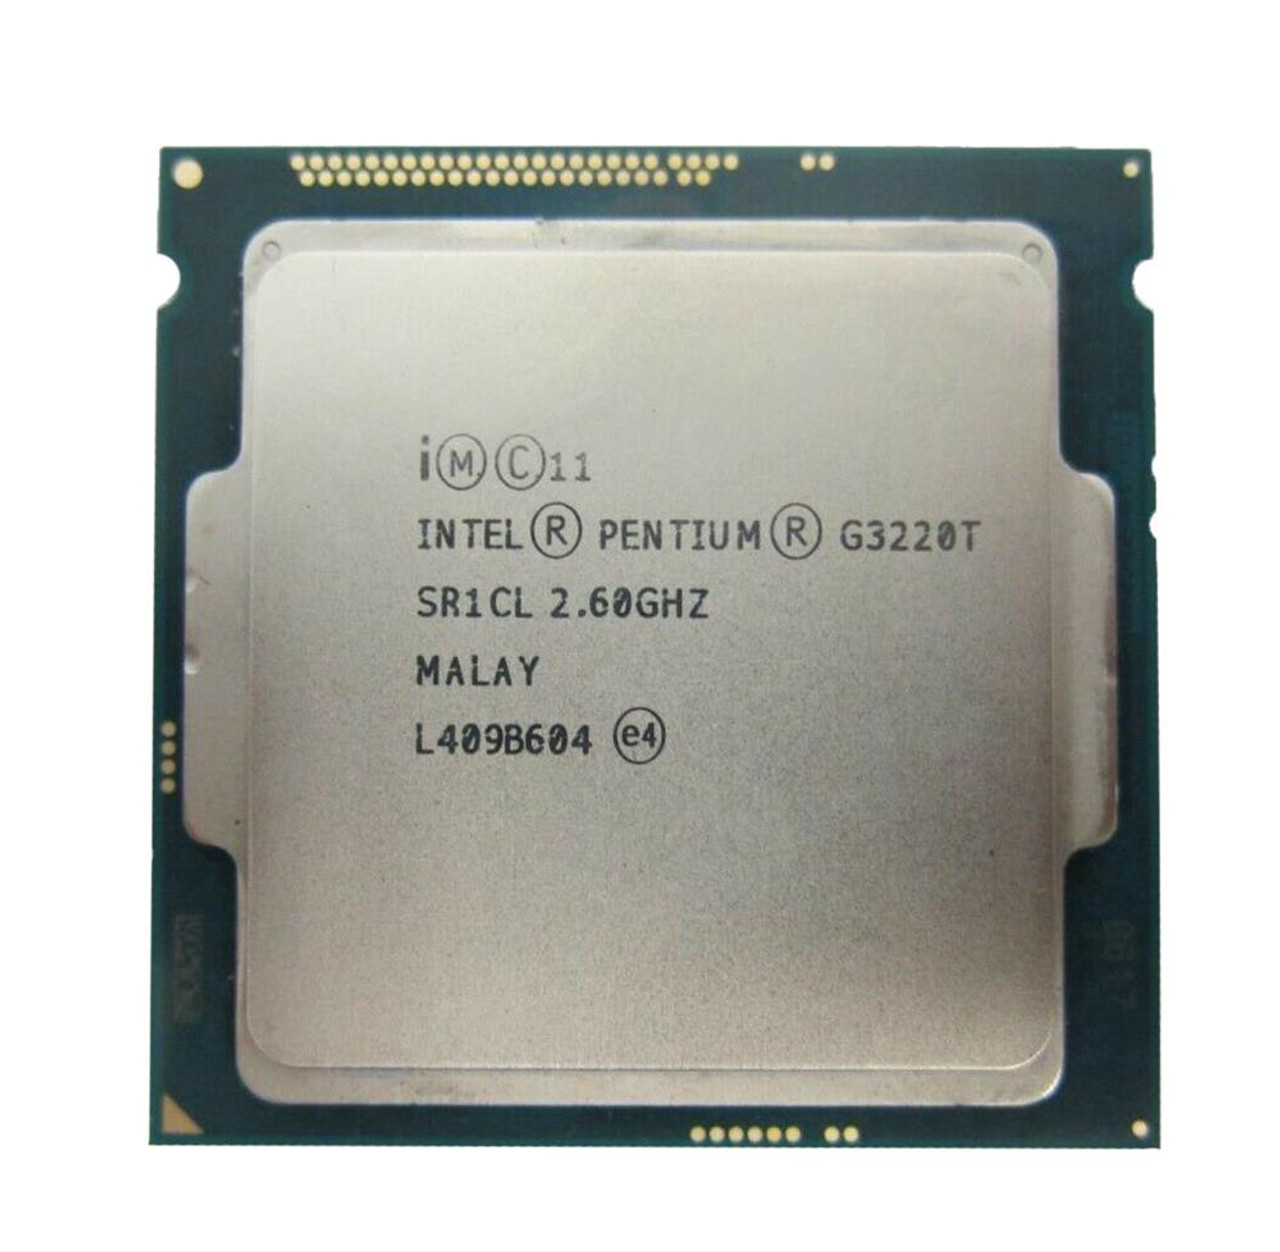 Lenovo 2.60GHz 5.00GT/s DMI2 3MB L3 Cache Socket LGA1150 Intel Pentium G3220T Dual-Core Desktop Processor Upgrade